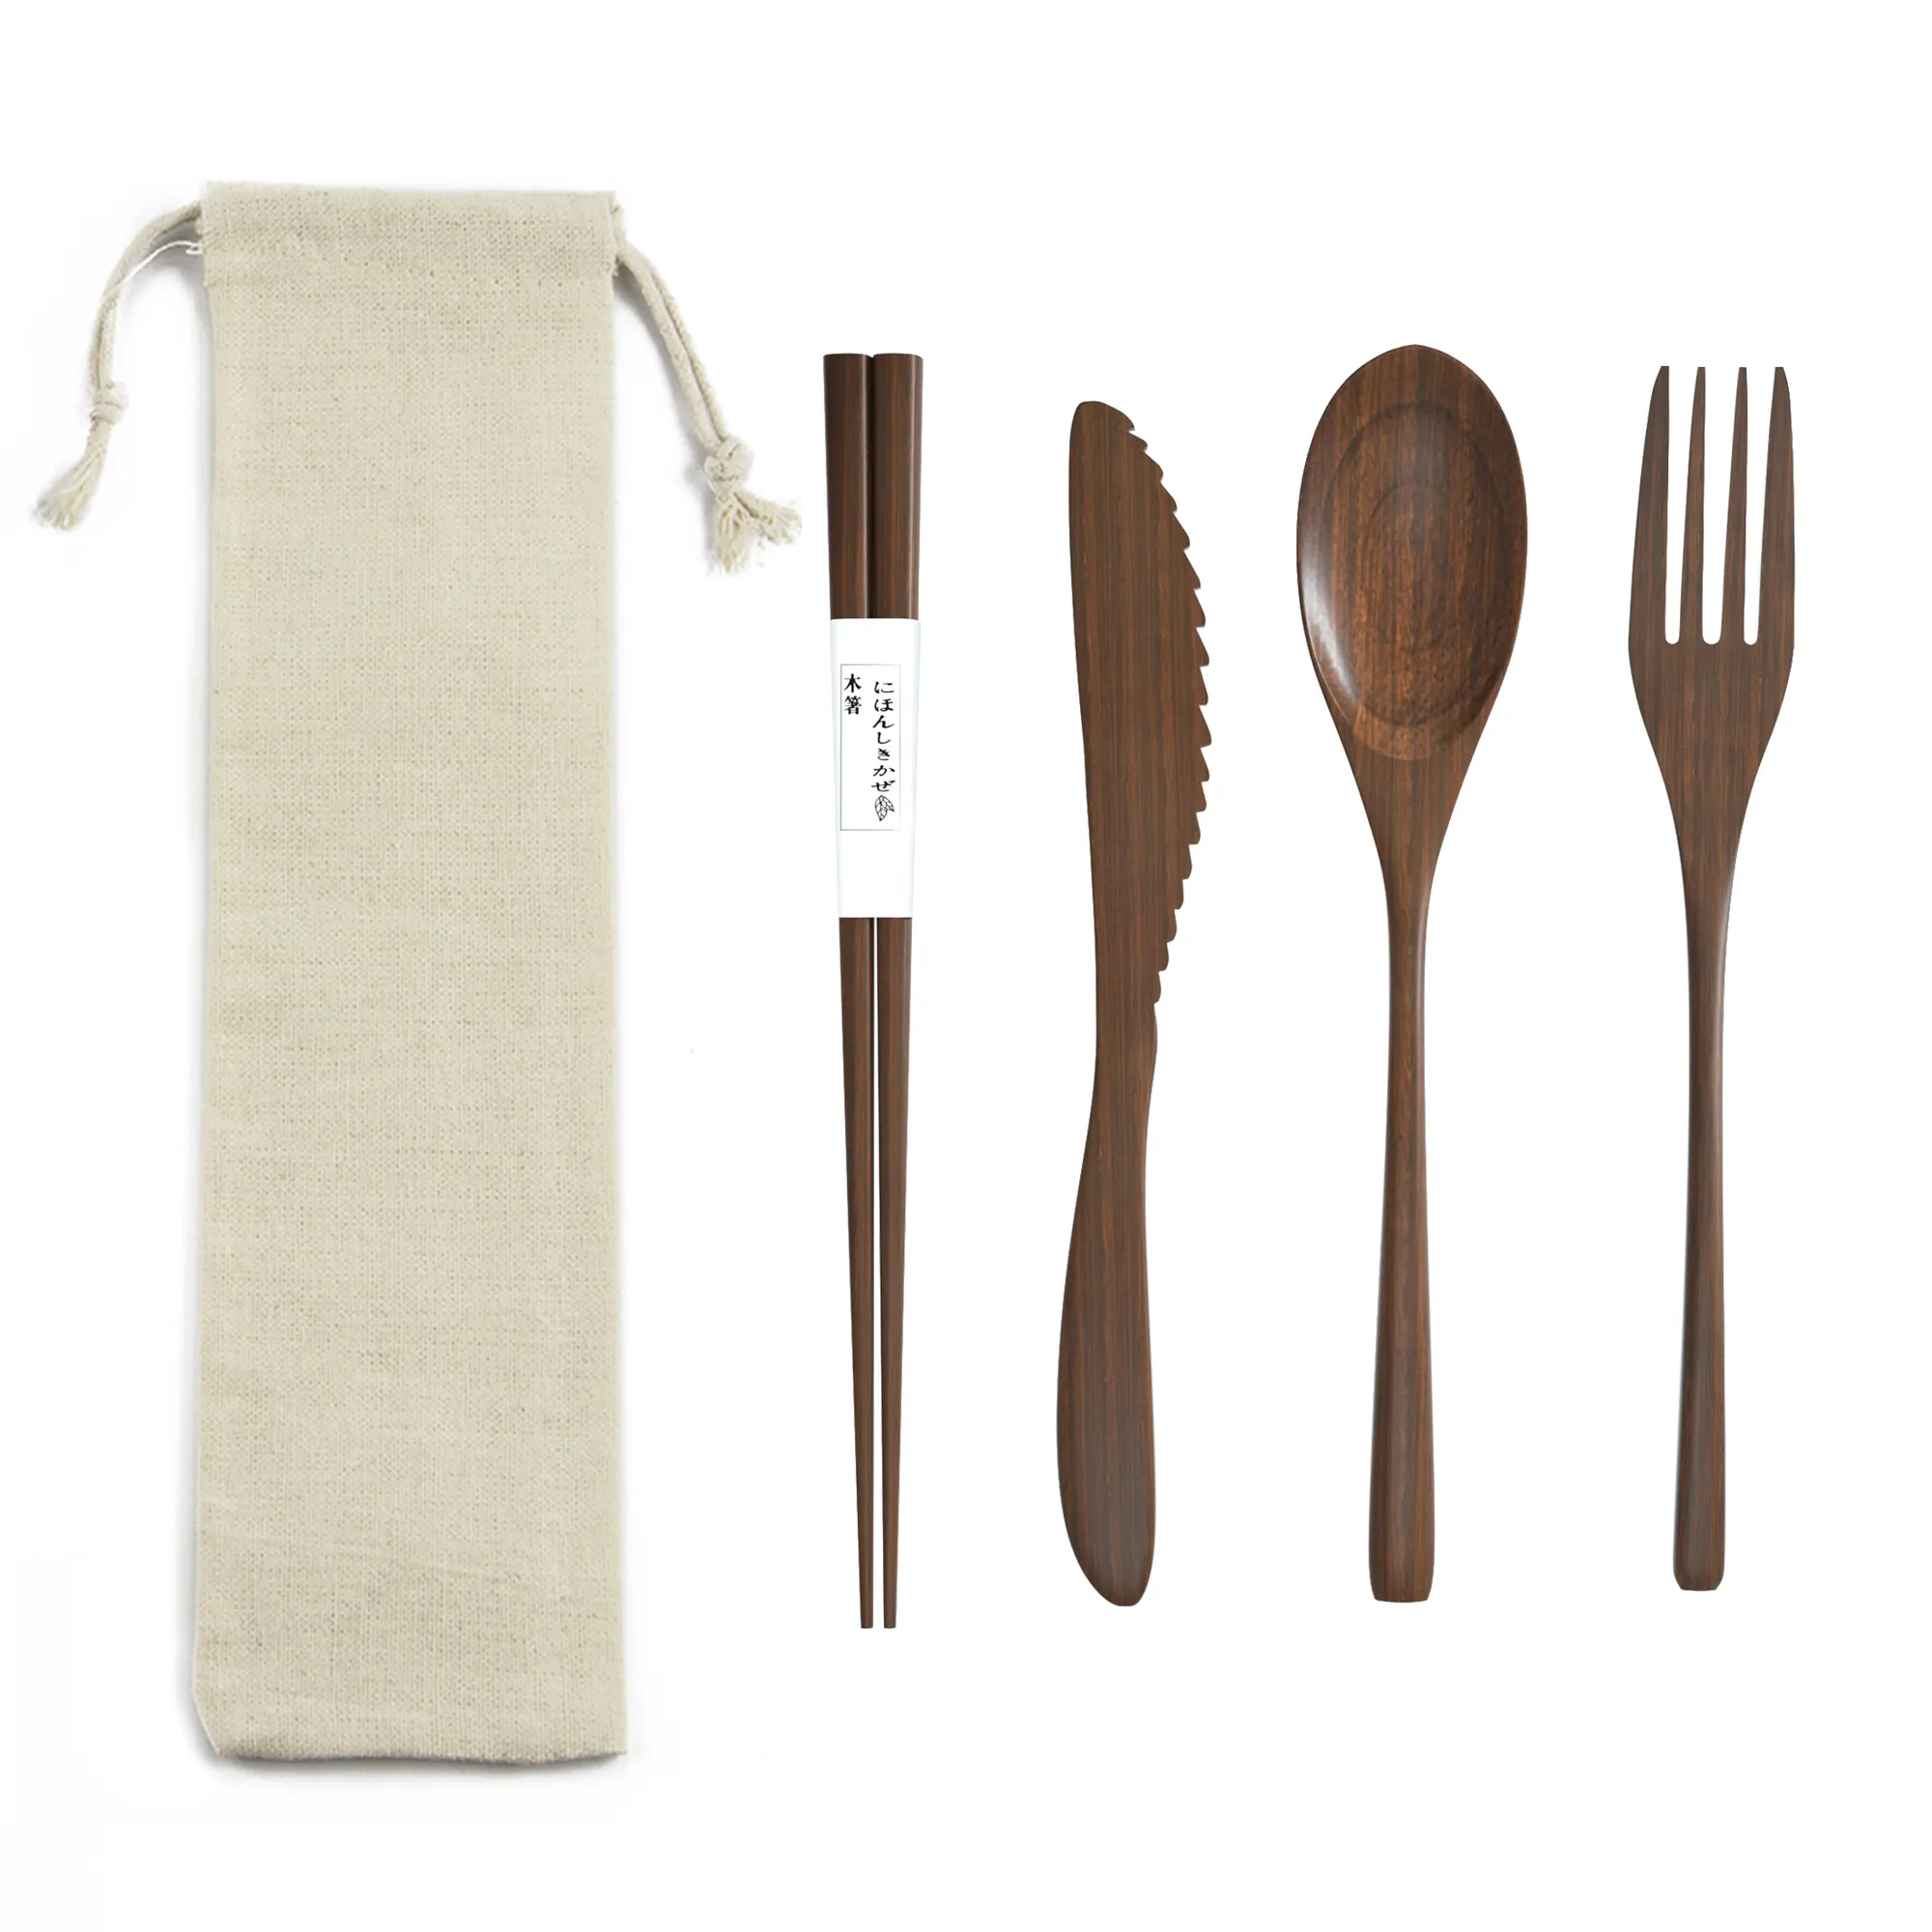 Posate in legno riutilizzabili ecologiche coltello in paglia cucchiaio forchetta set di bacchette set di posate da campeggio in legno da viaggio